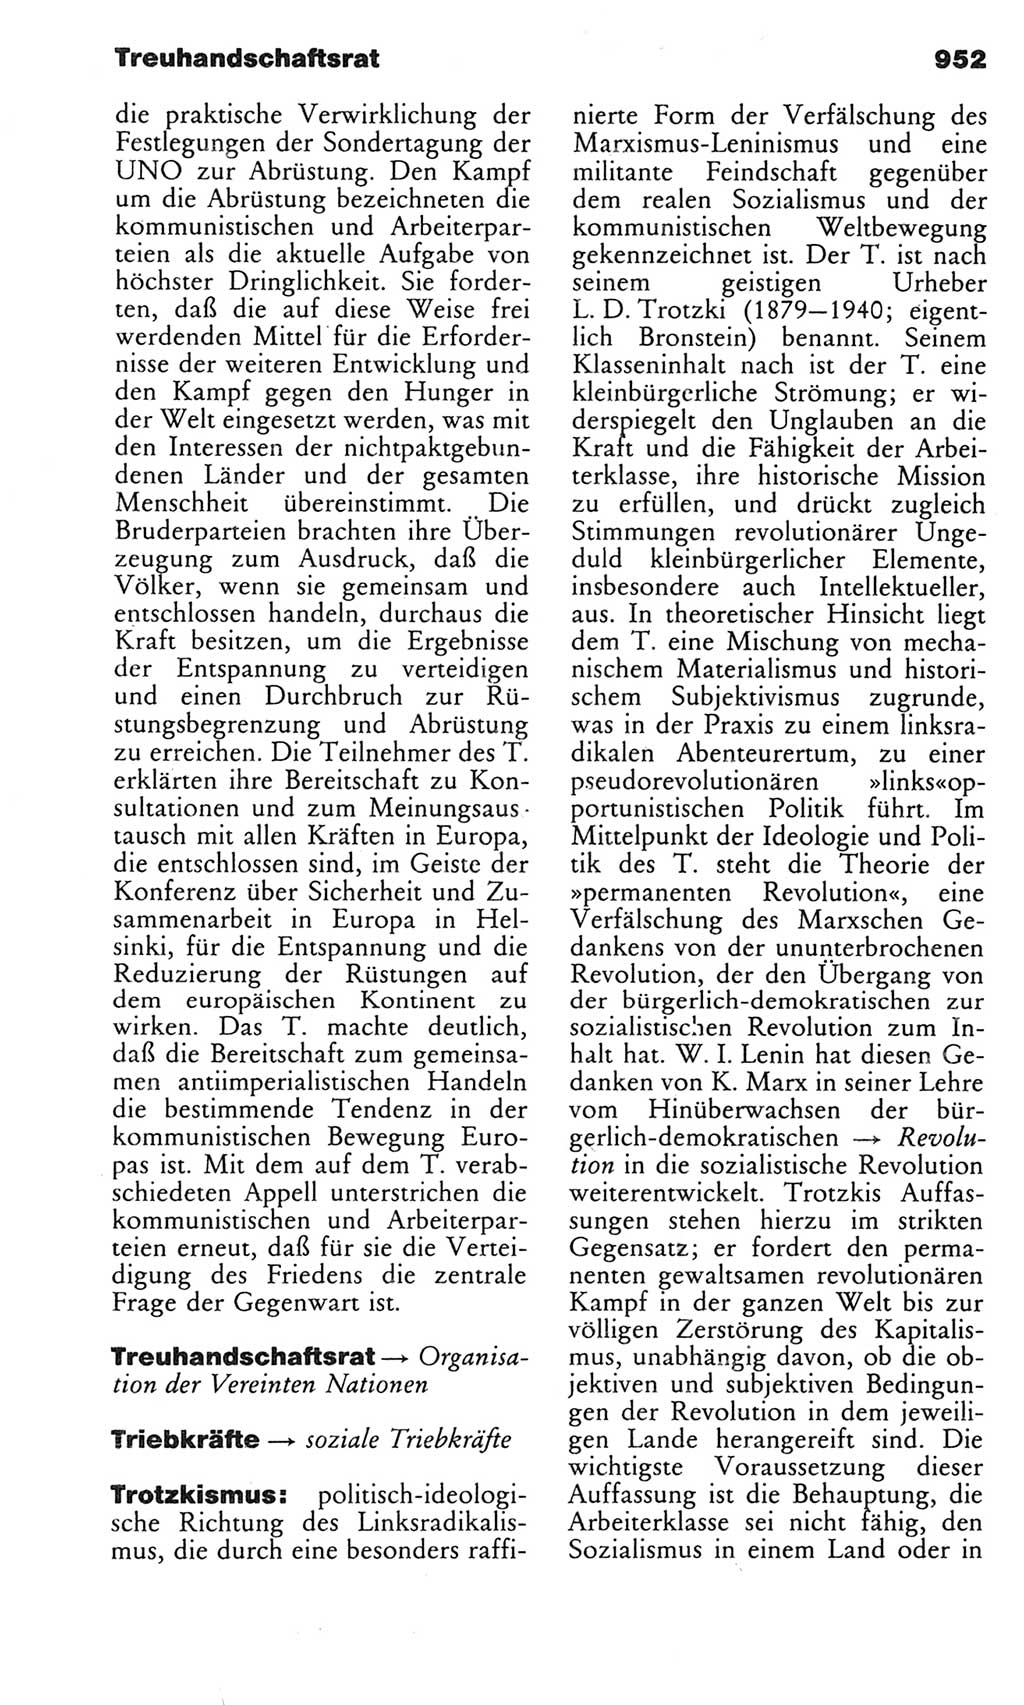 Kleines politisches Wörterbuch [Deutsche Demokratische Republik (DDR)] 1983, Seite 952 (Kl. pol. Wb. DDR 1983, S. 952)